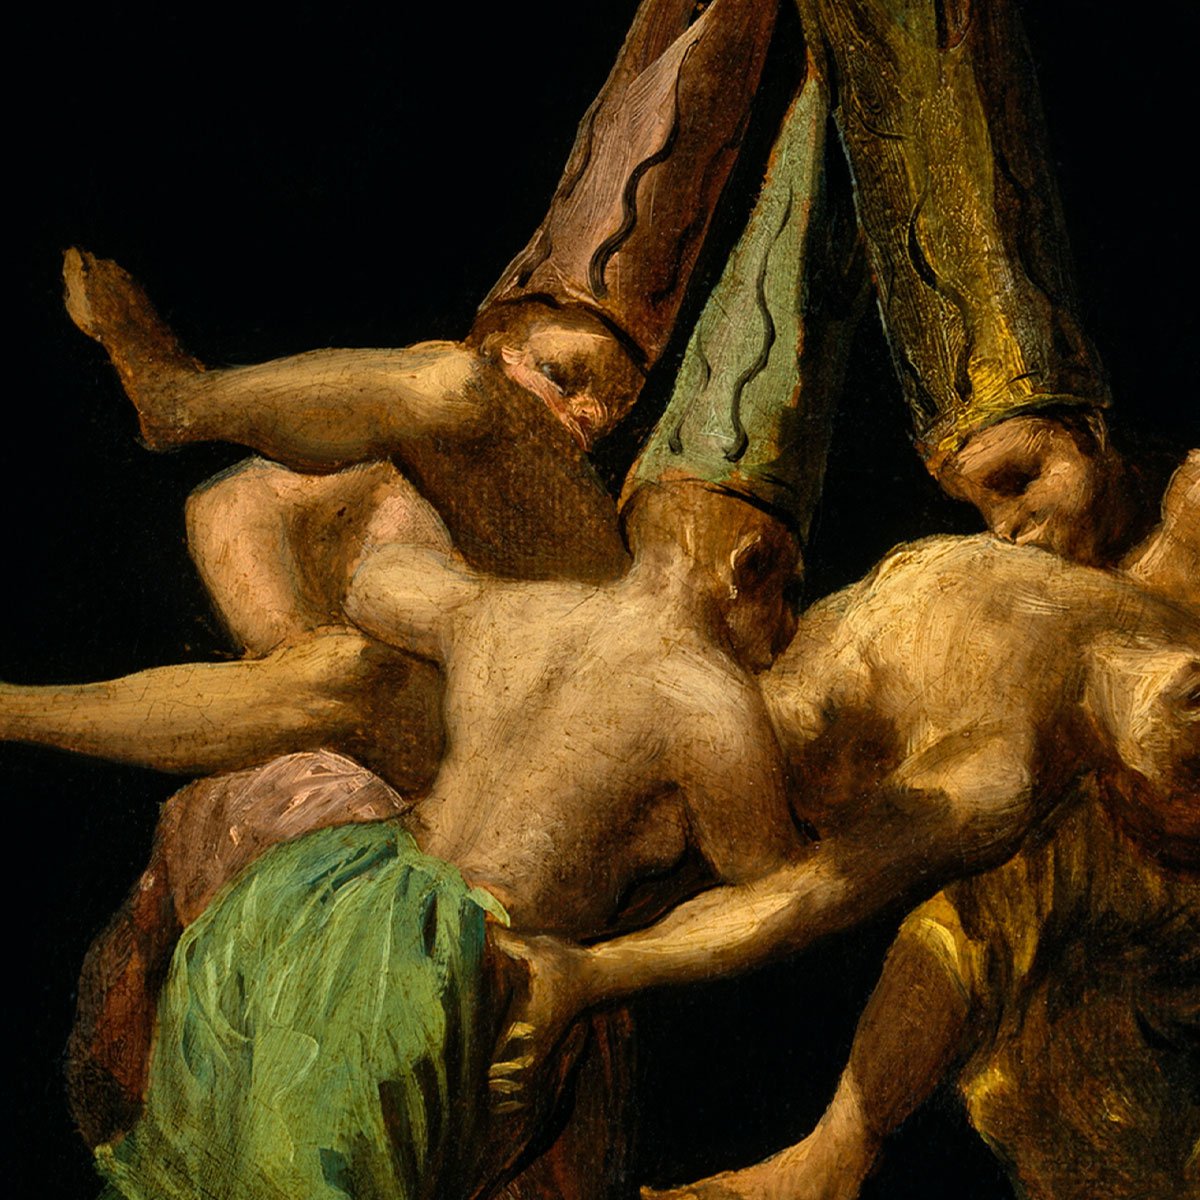 Vuela de Brujas by Francisco de Goya